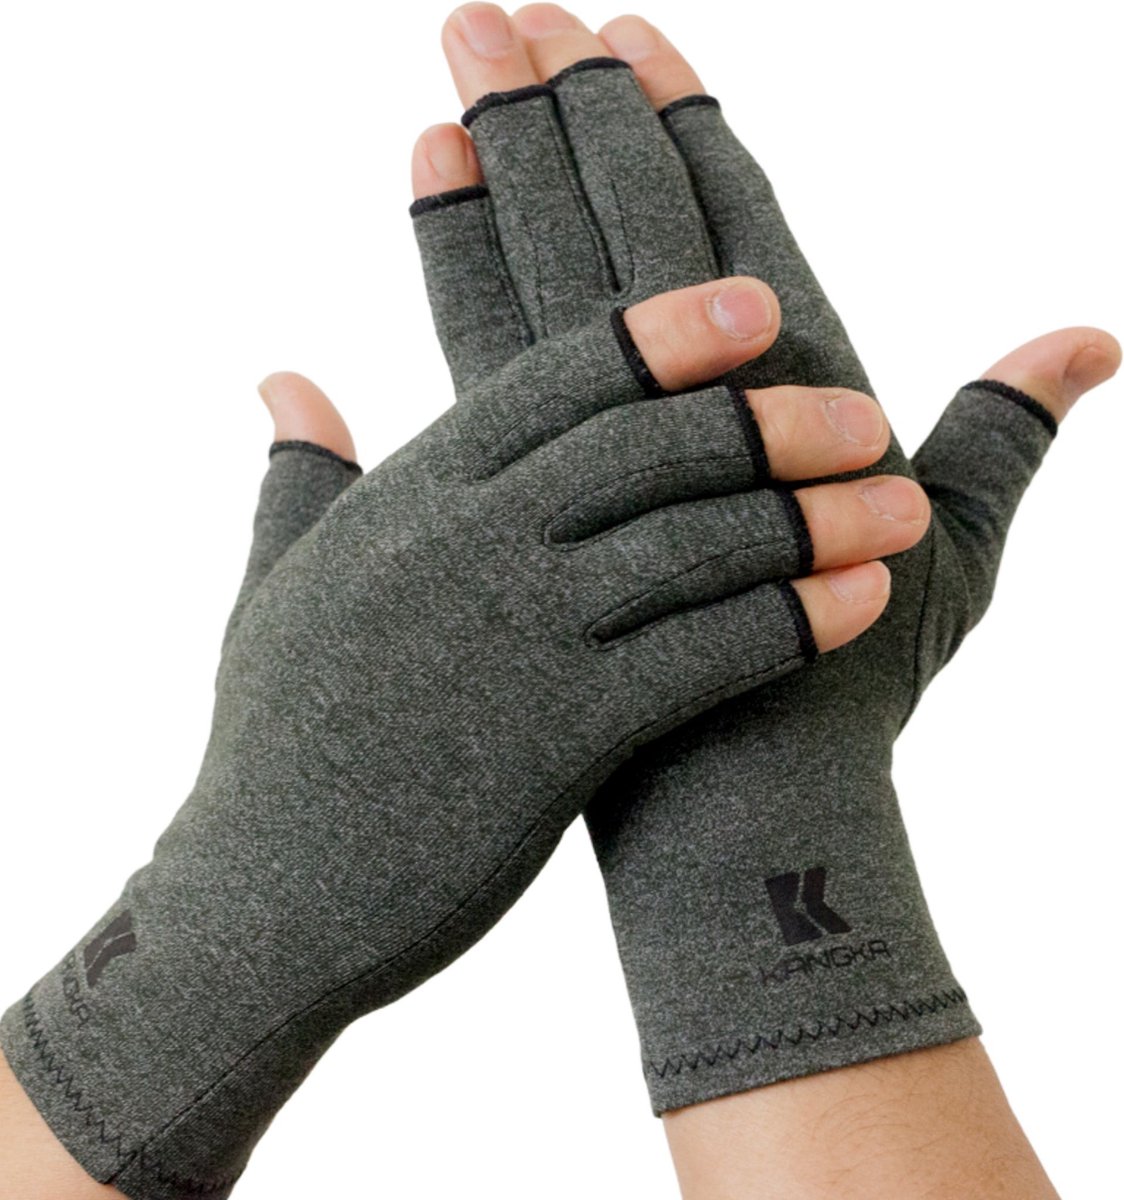 KANGKA® Reuma Compressie Handschoenen Maat L voor Artrose, CTS, Reuma, RSI, Artritis - Open Vingertoppen - Grijs - Unisex